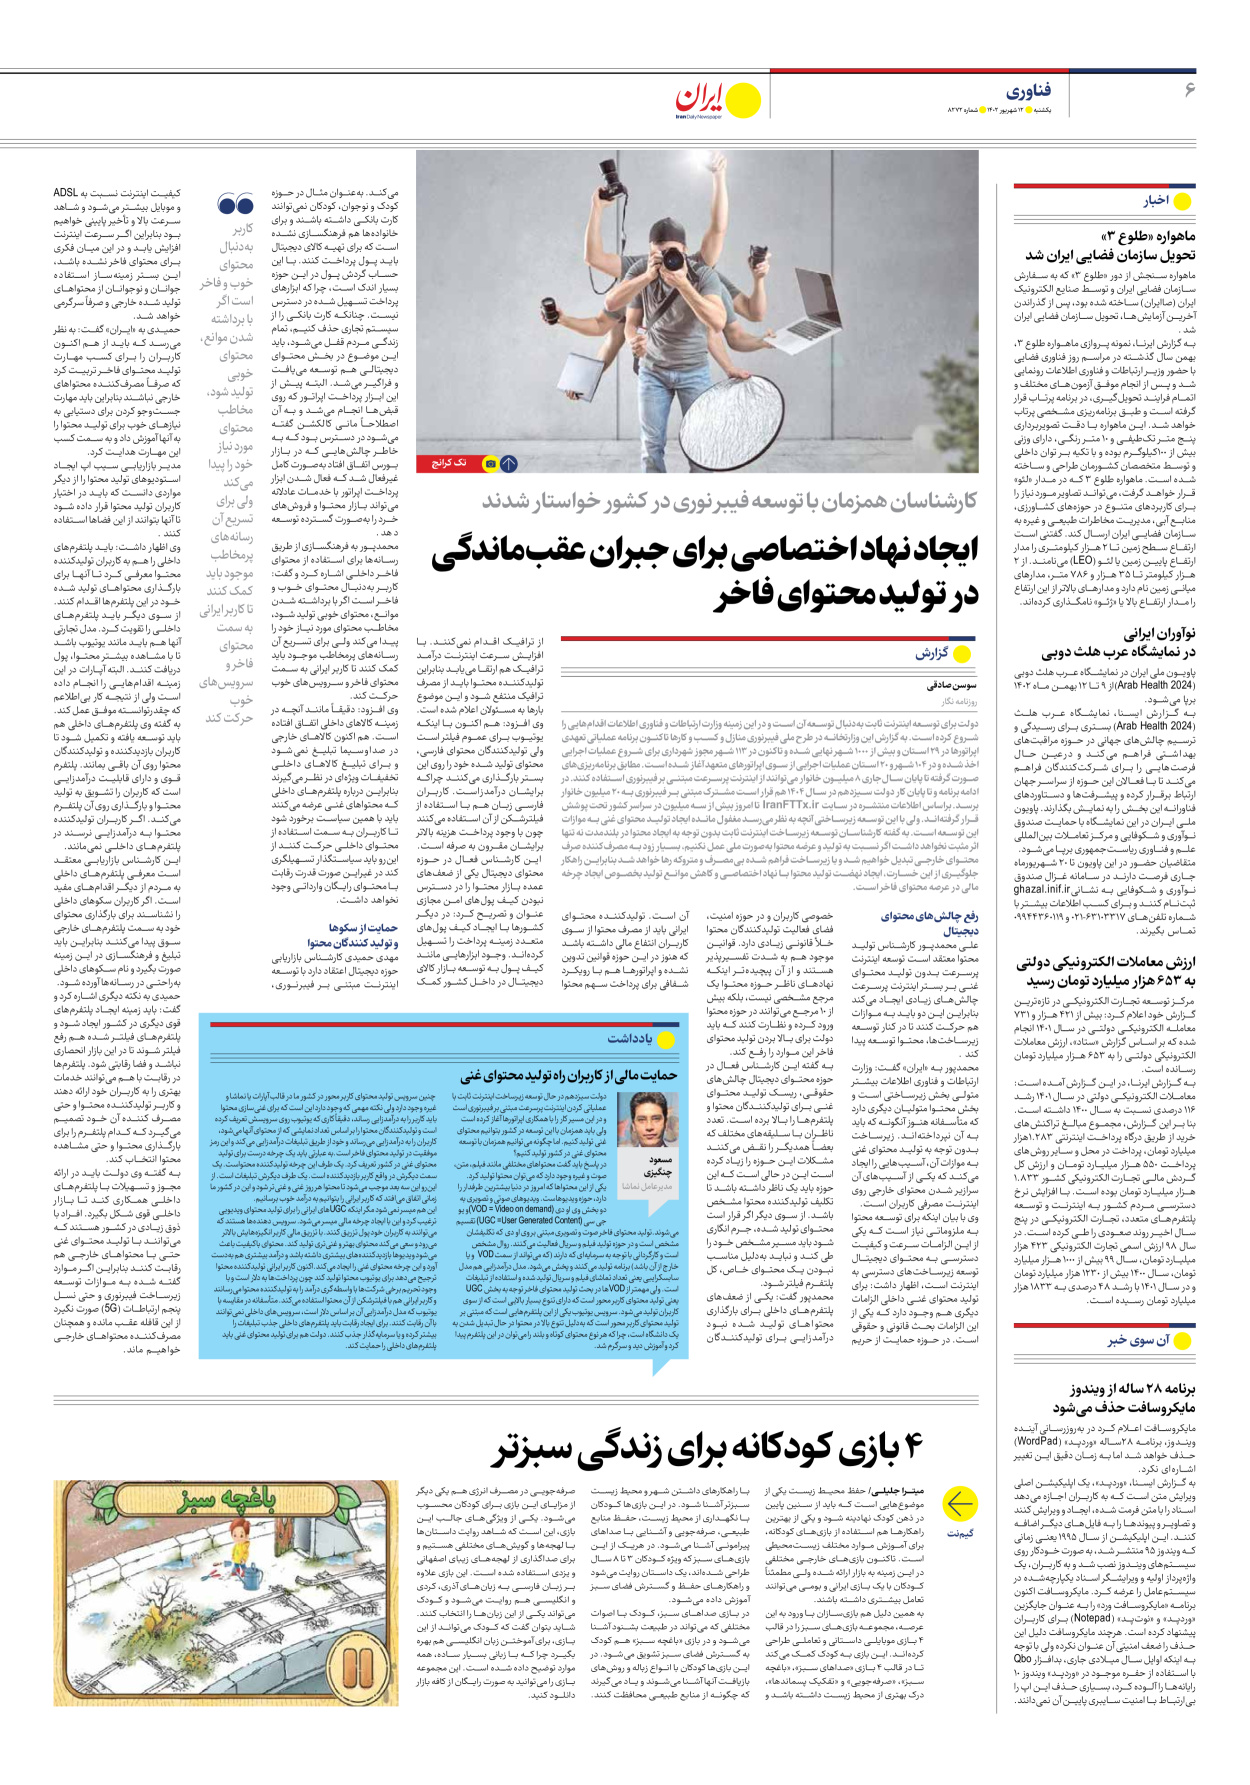 روزنامه ایران - شماره هشت هزار و دویست و هفتاد و دو - ۱۲ شهریور ۱۴۰۲ - صفحه ۶